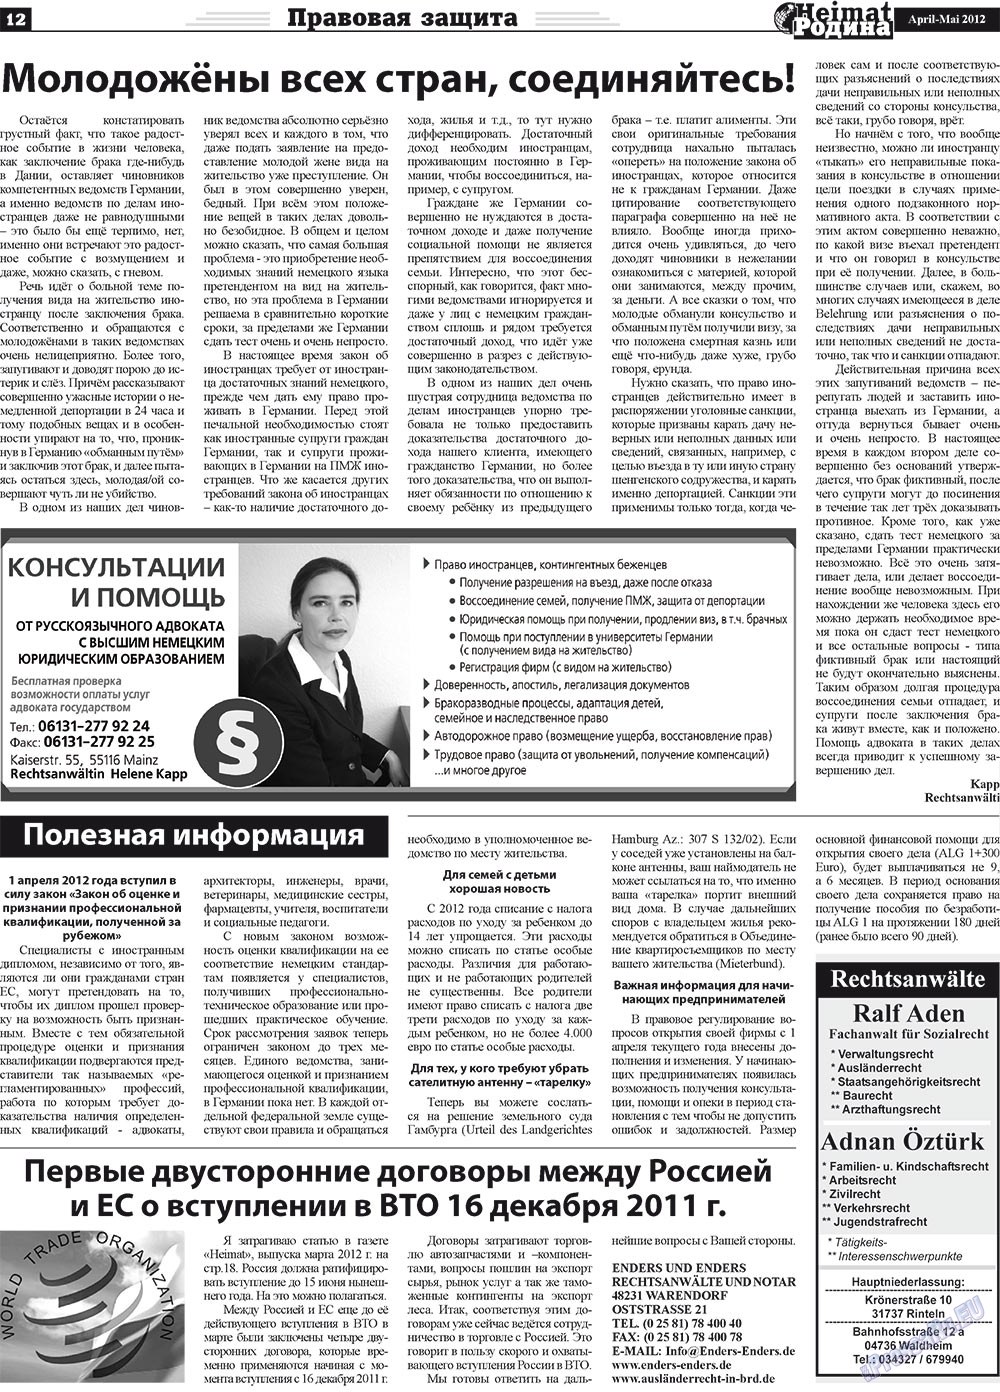 Heimat-Родина (газета). 2012 год, номер 4, стр. 12